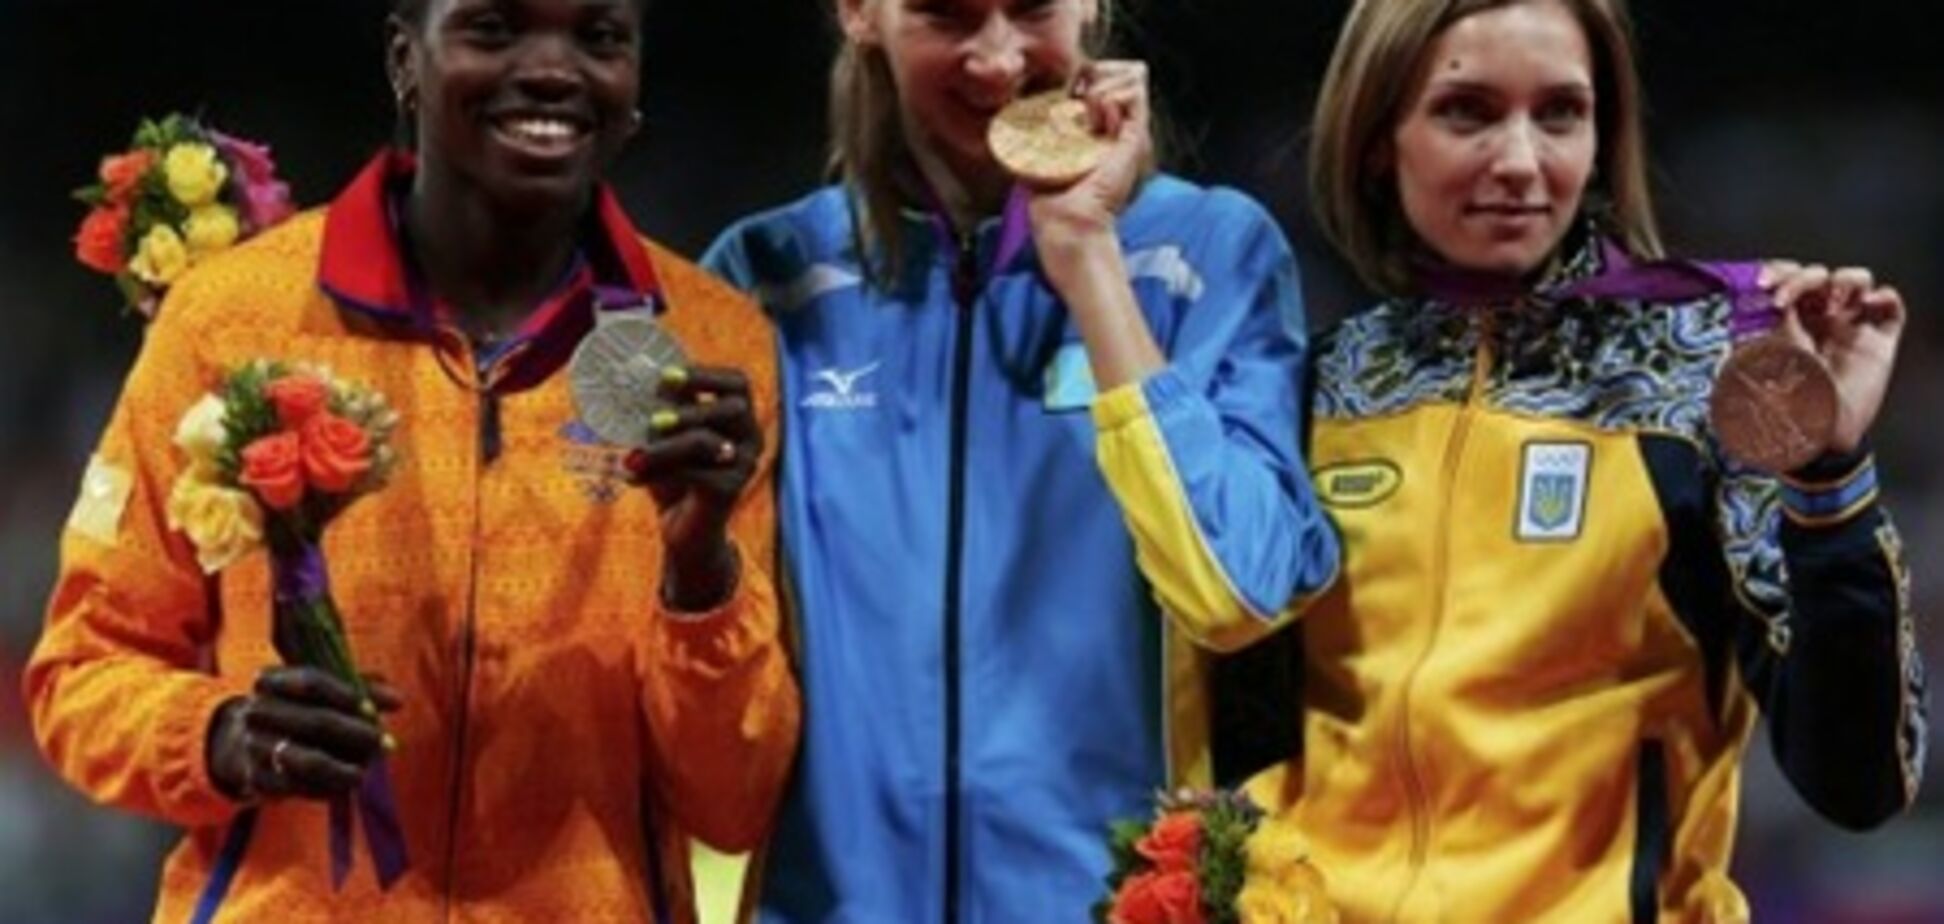 Украинская призерка Саладуха: пока смотрела на табло, чуть не поседела